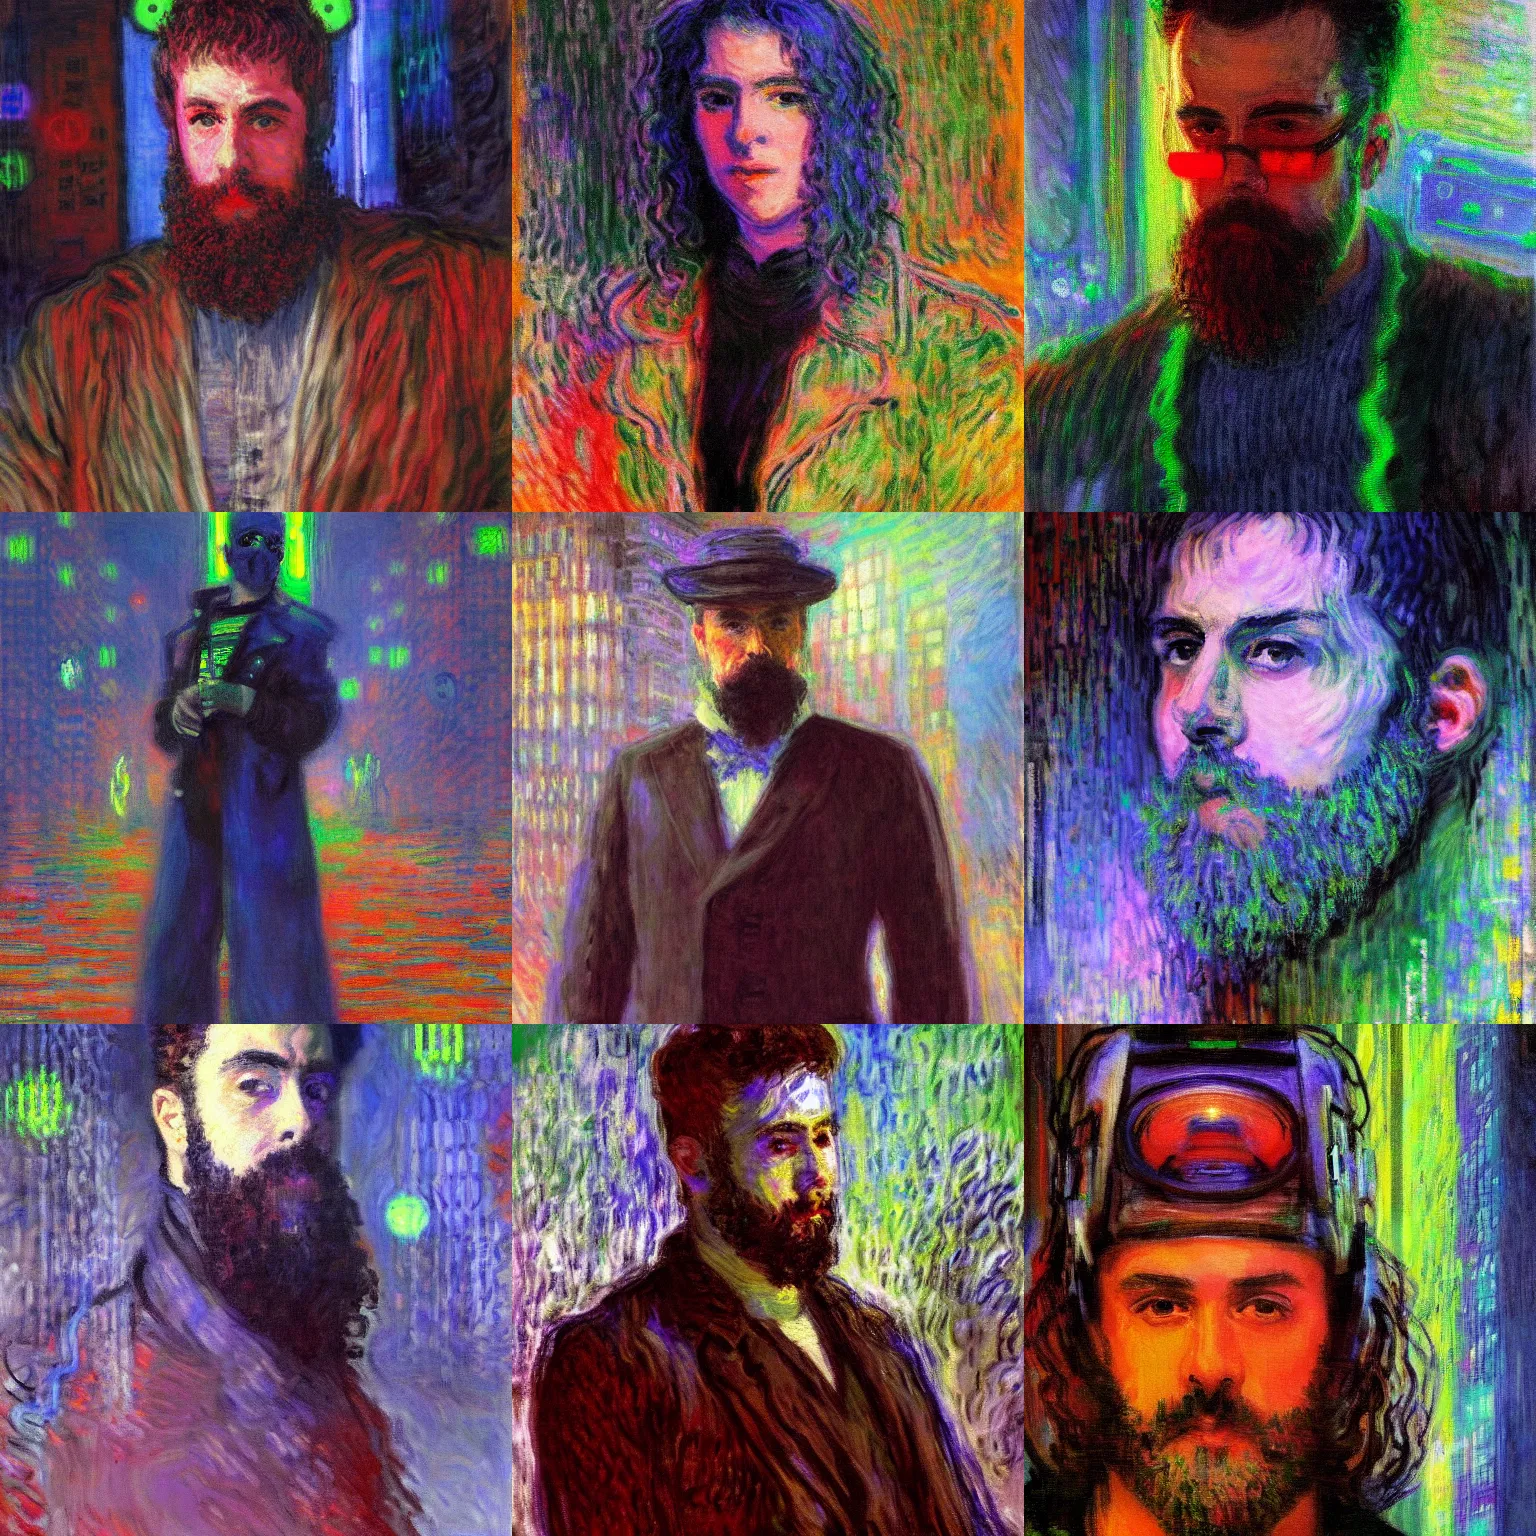 Prompt: A cyberpunk portrait painted by Claude Monet